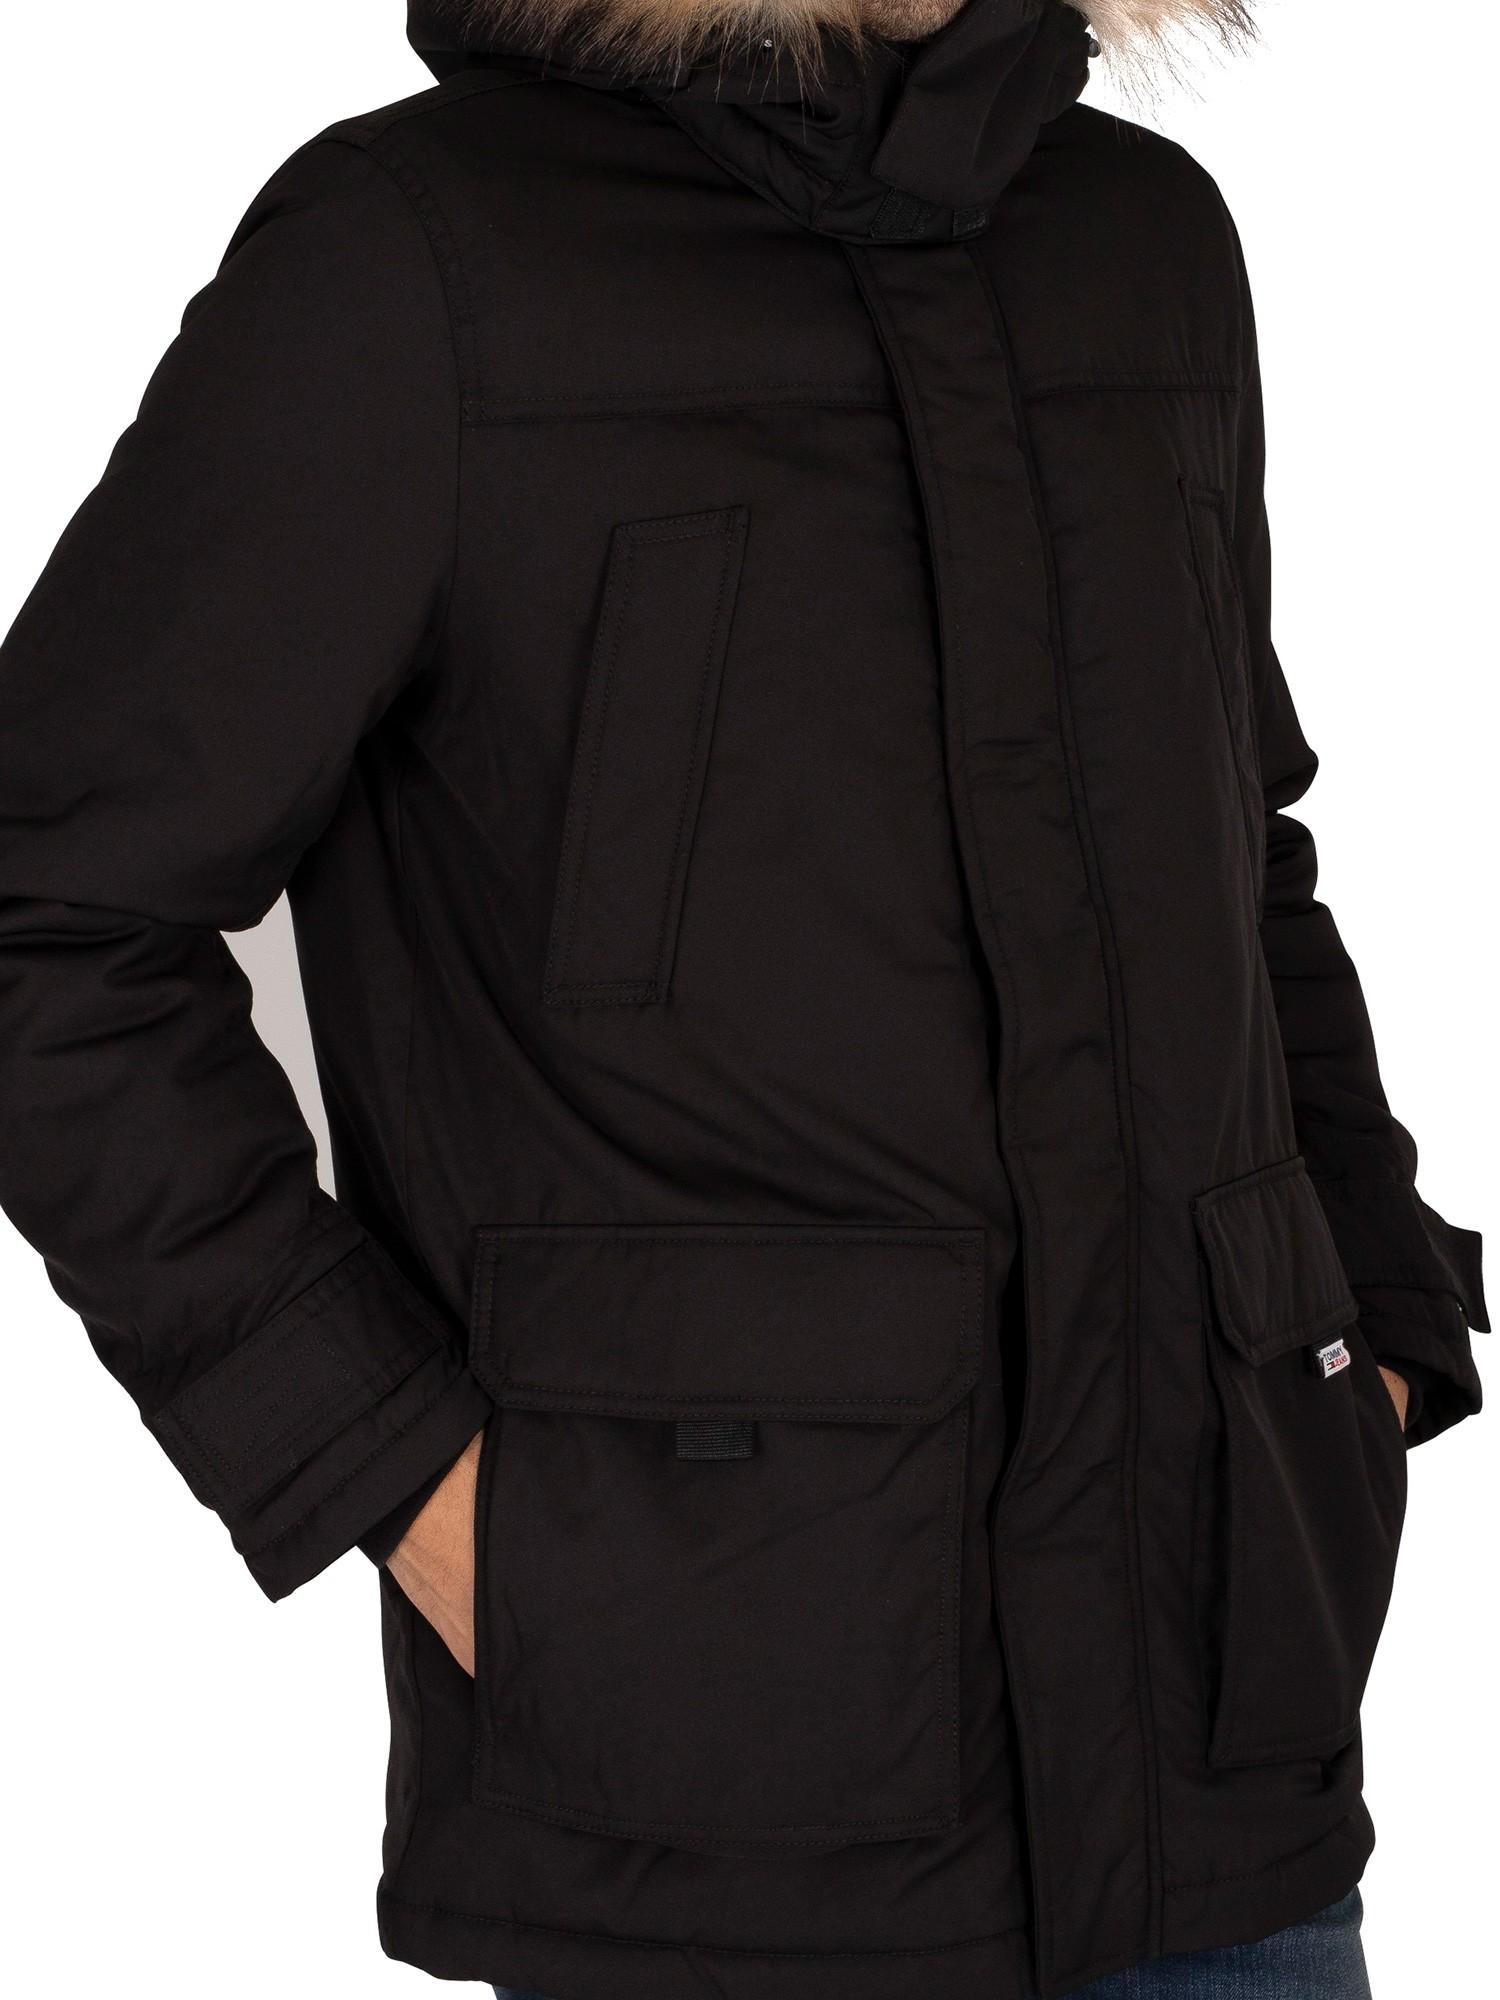 billig kort levering Tommy Hilfiger Tech Parka Jacket in Black for Men | Lyst